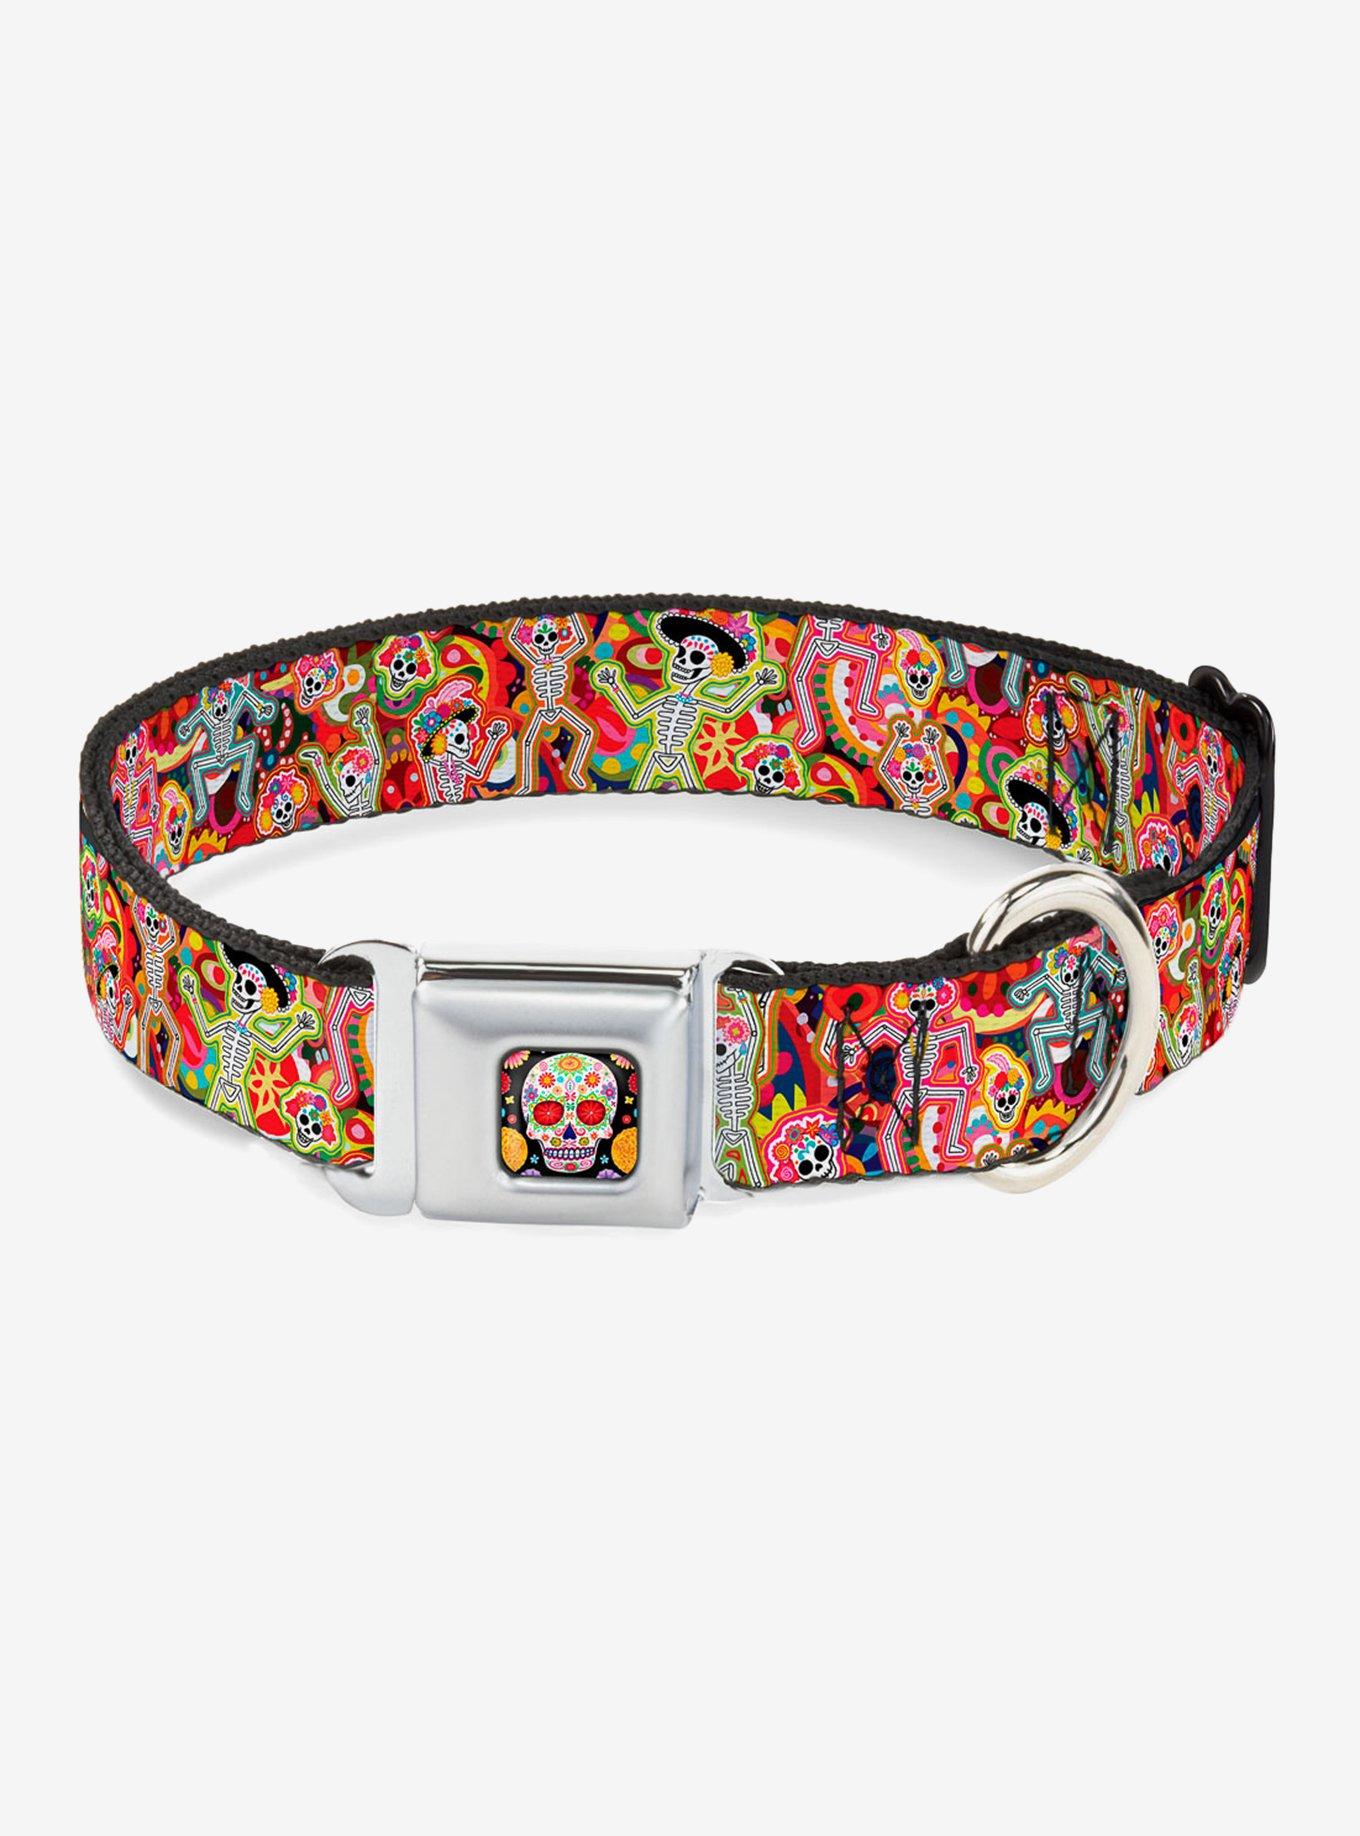 Dancing Catrinas Collage Multi Color Seatbelt Buckle Dog Collar, MULTICOLOR, hi-res